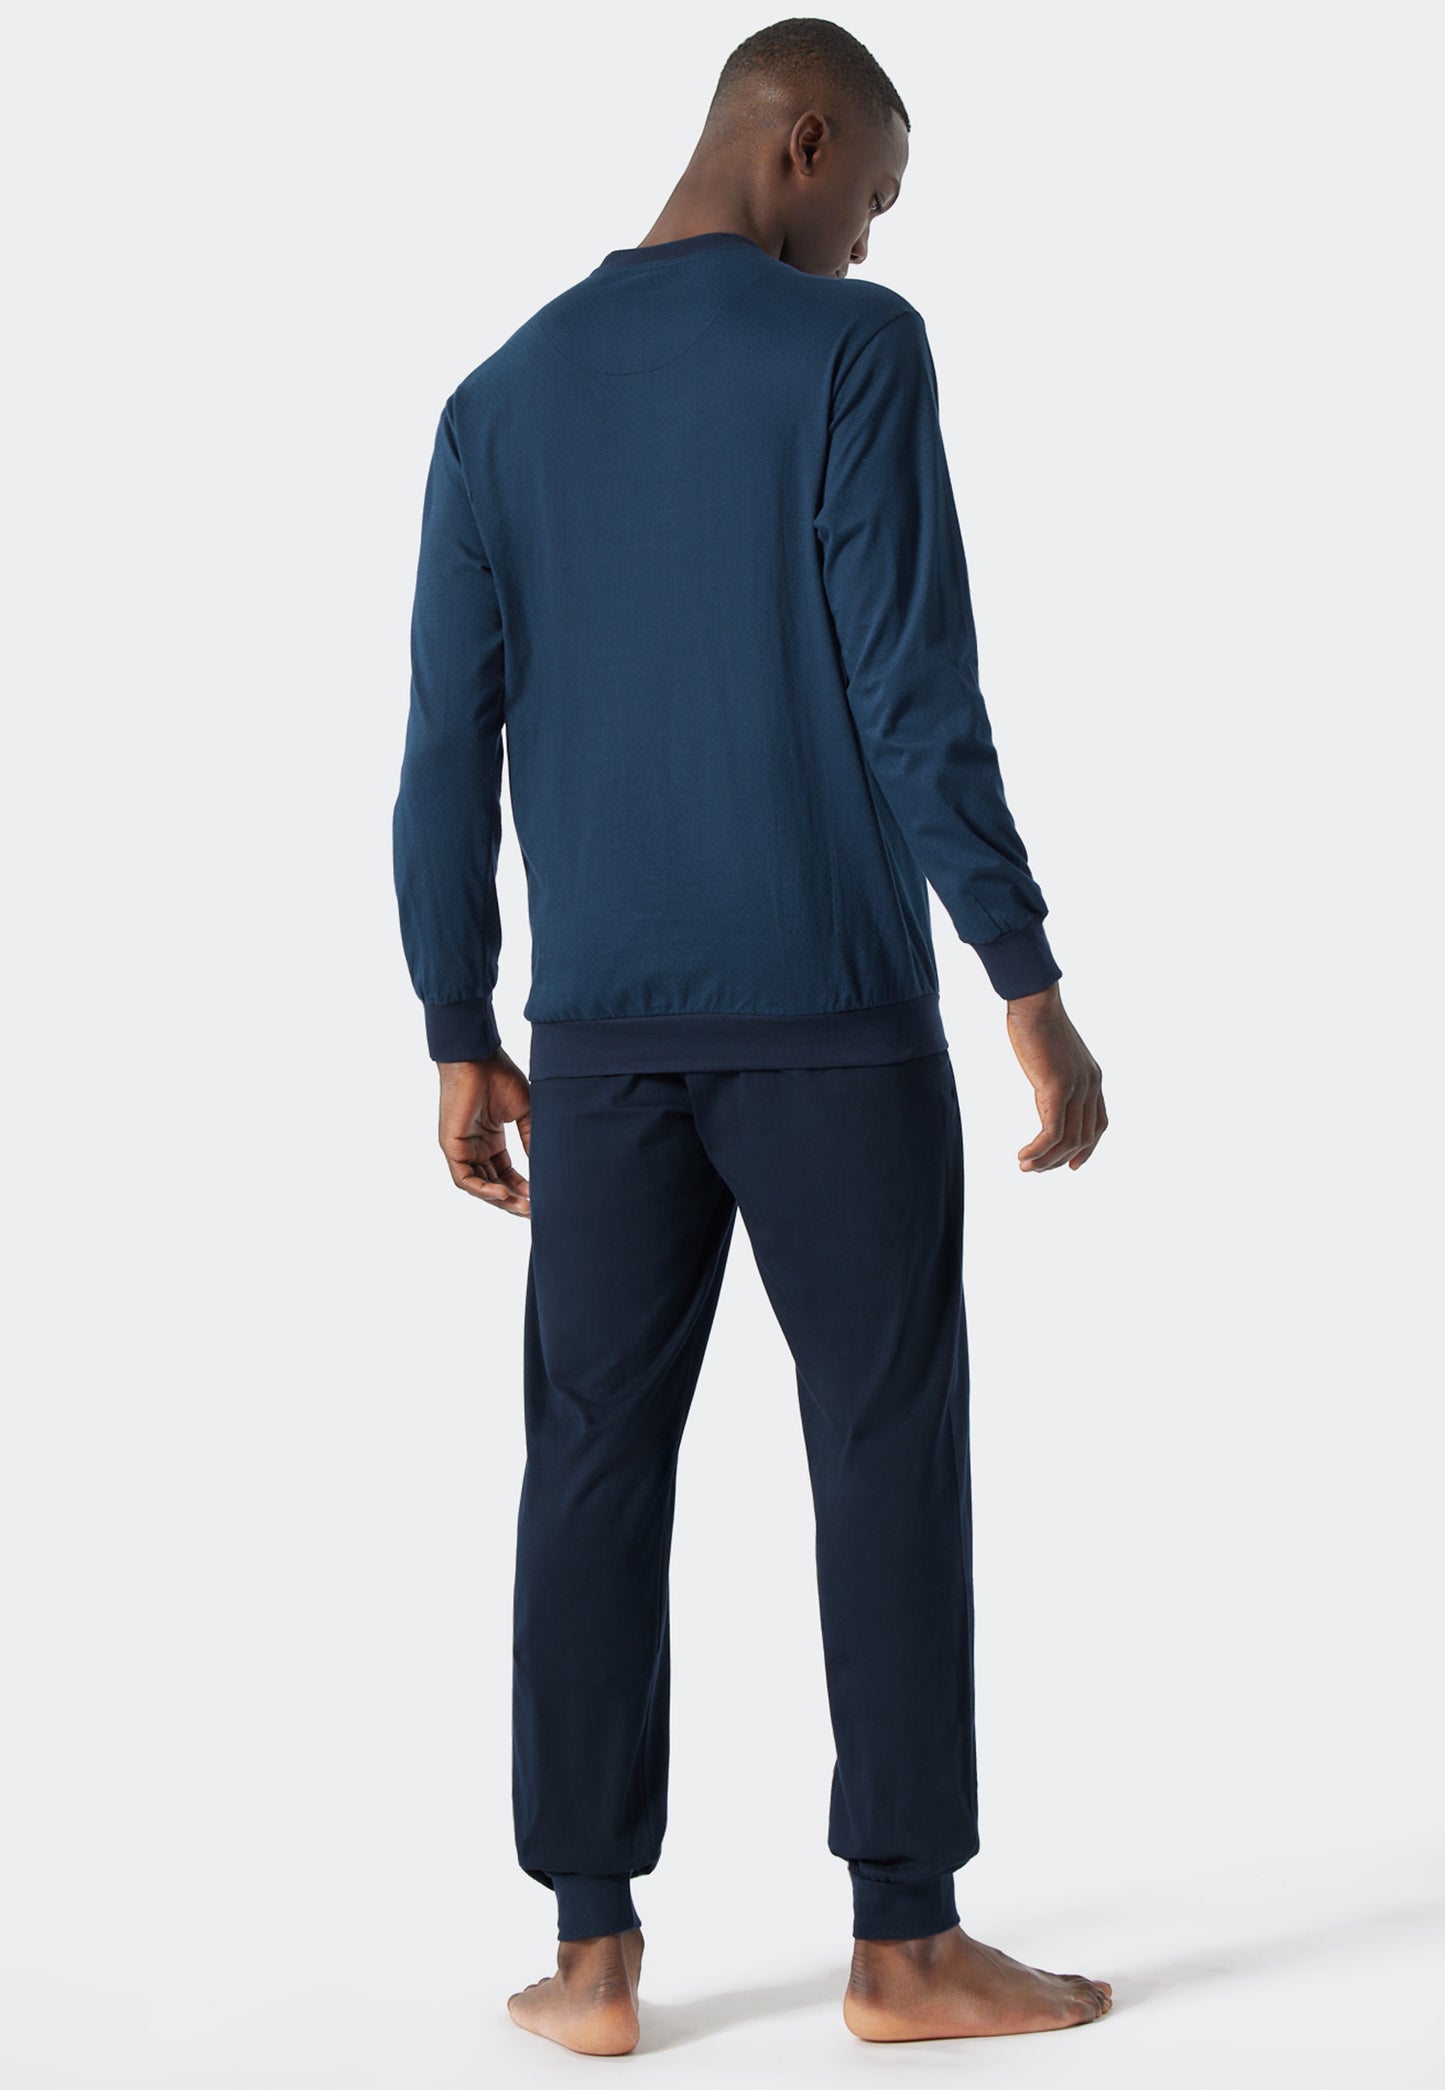 Schlafanzug lang Rundhals Bündchen gemustert royal/dunkelblau - Essentials Nightwear